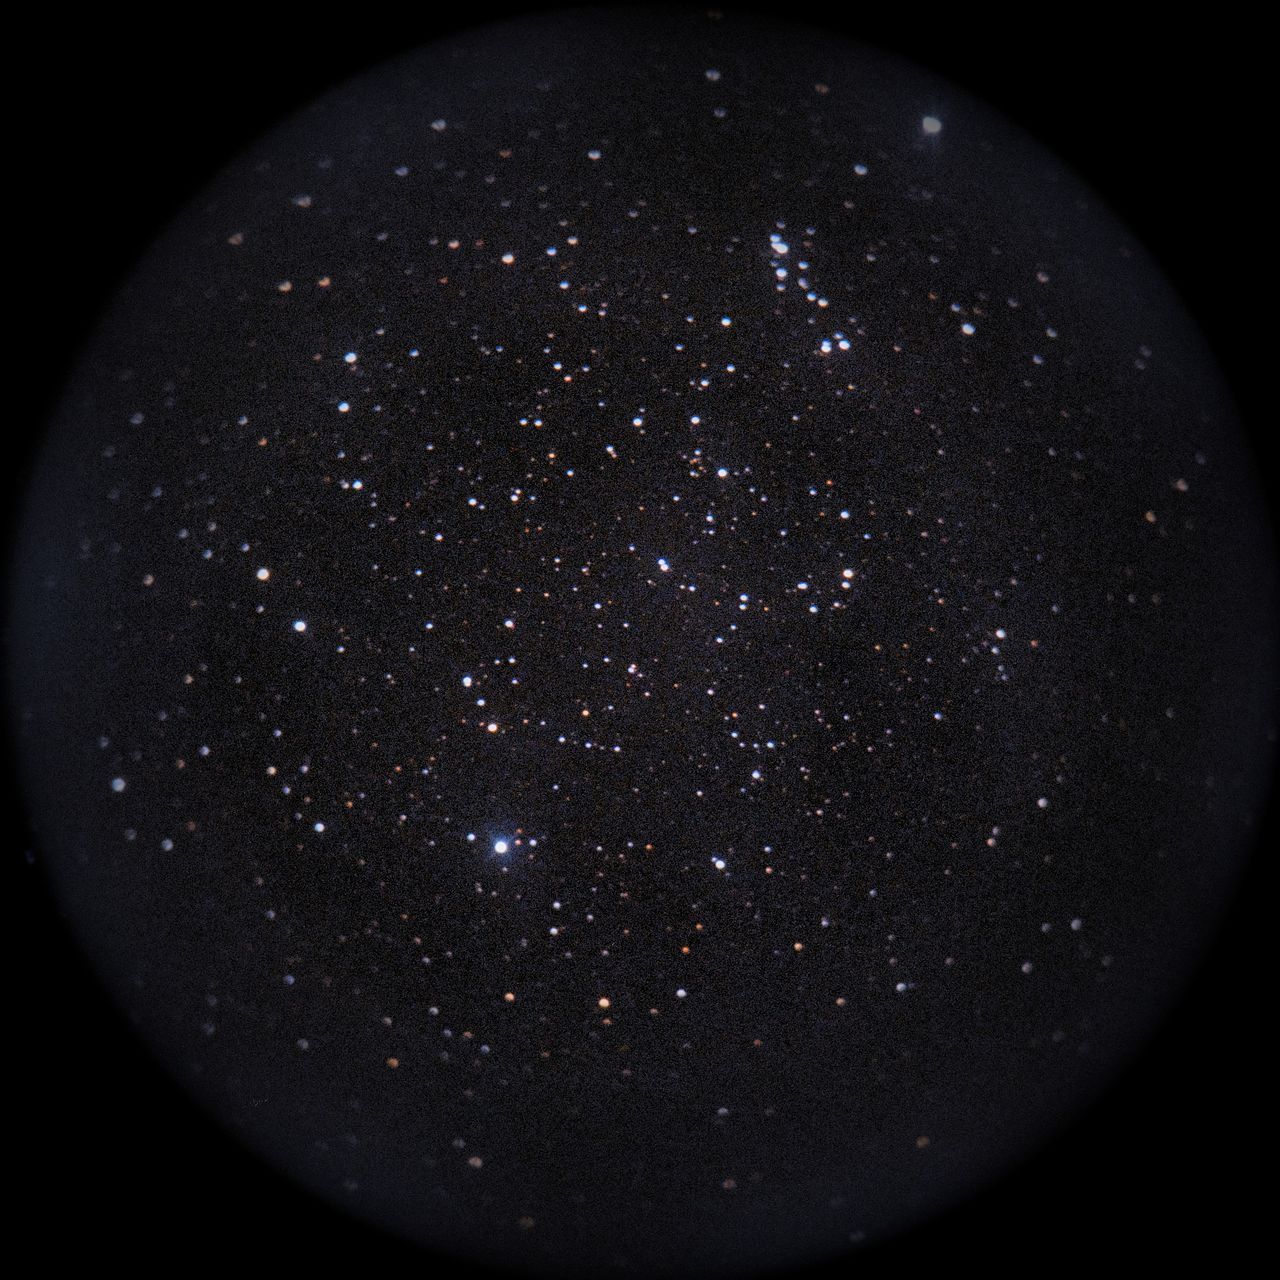 Image of NGC2546